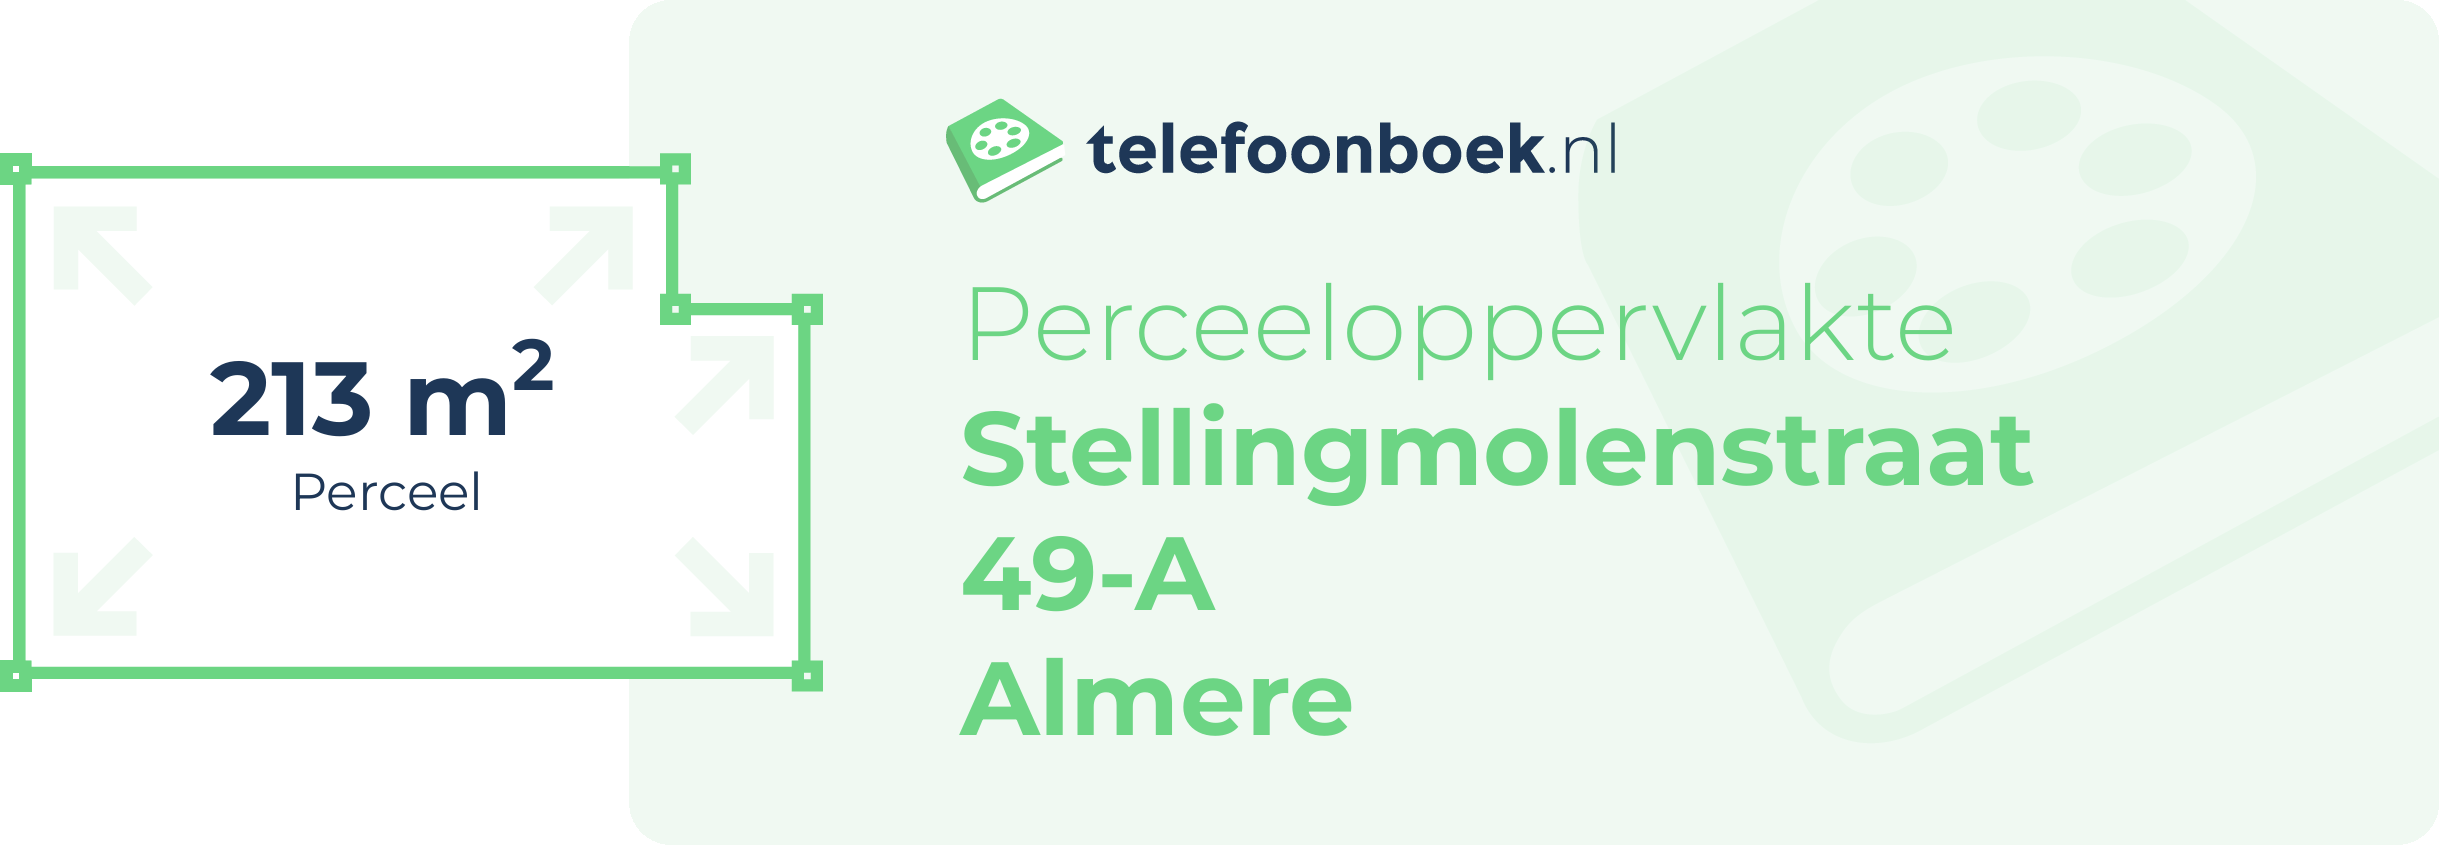 Perceeloppervlakte Stellingmolenstraat 49-A Almere